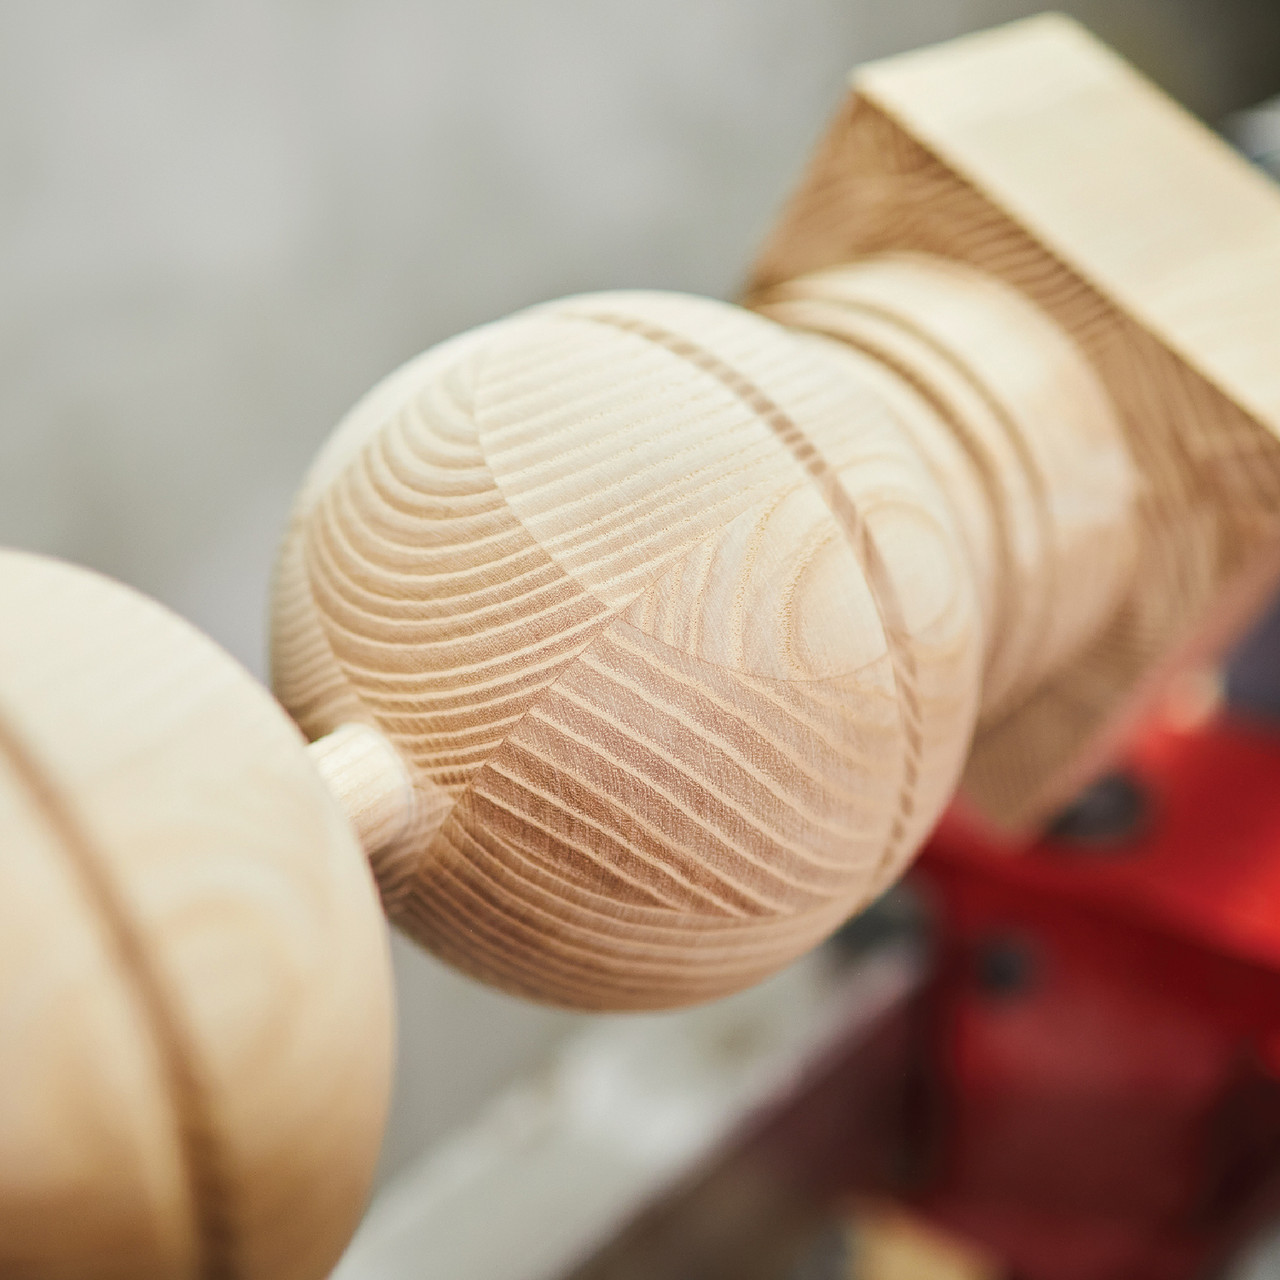 8 Pc. Wood Lathe Chisel Set Woodworking Turning Tools